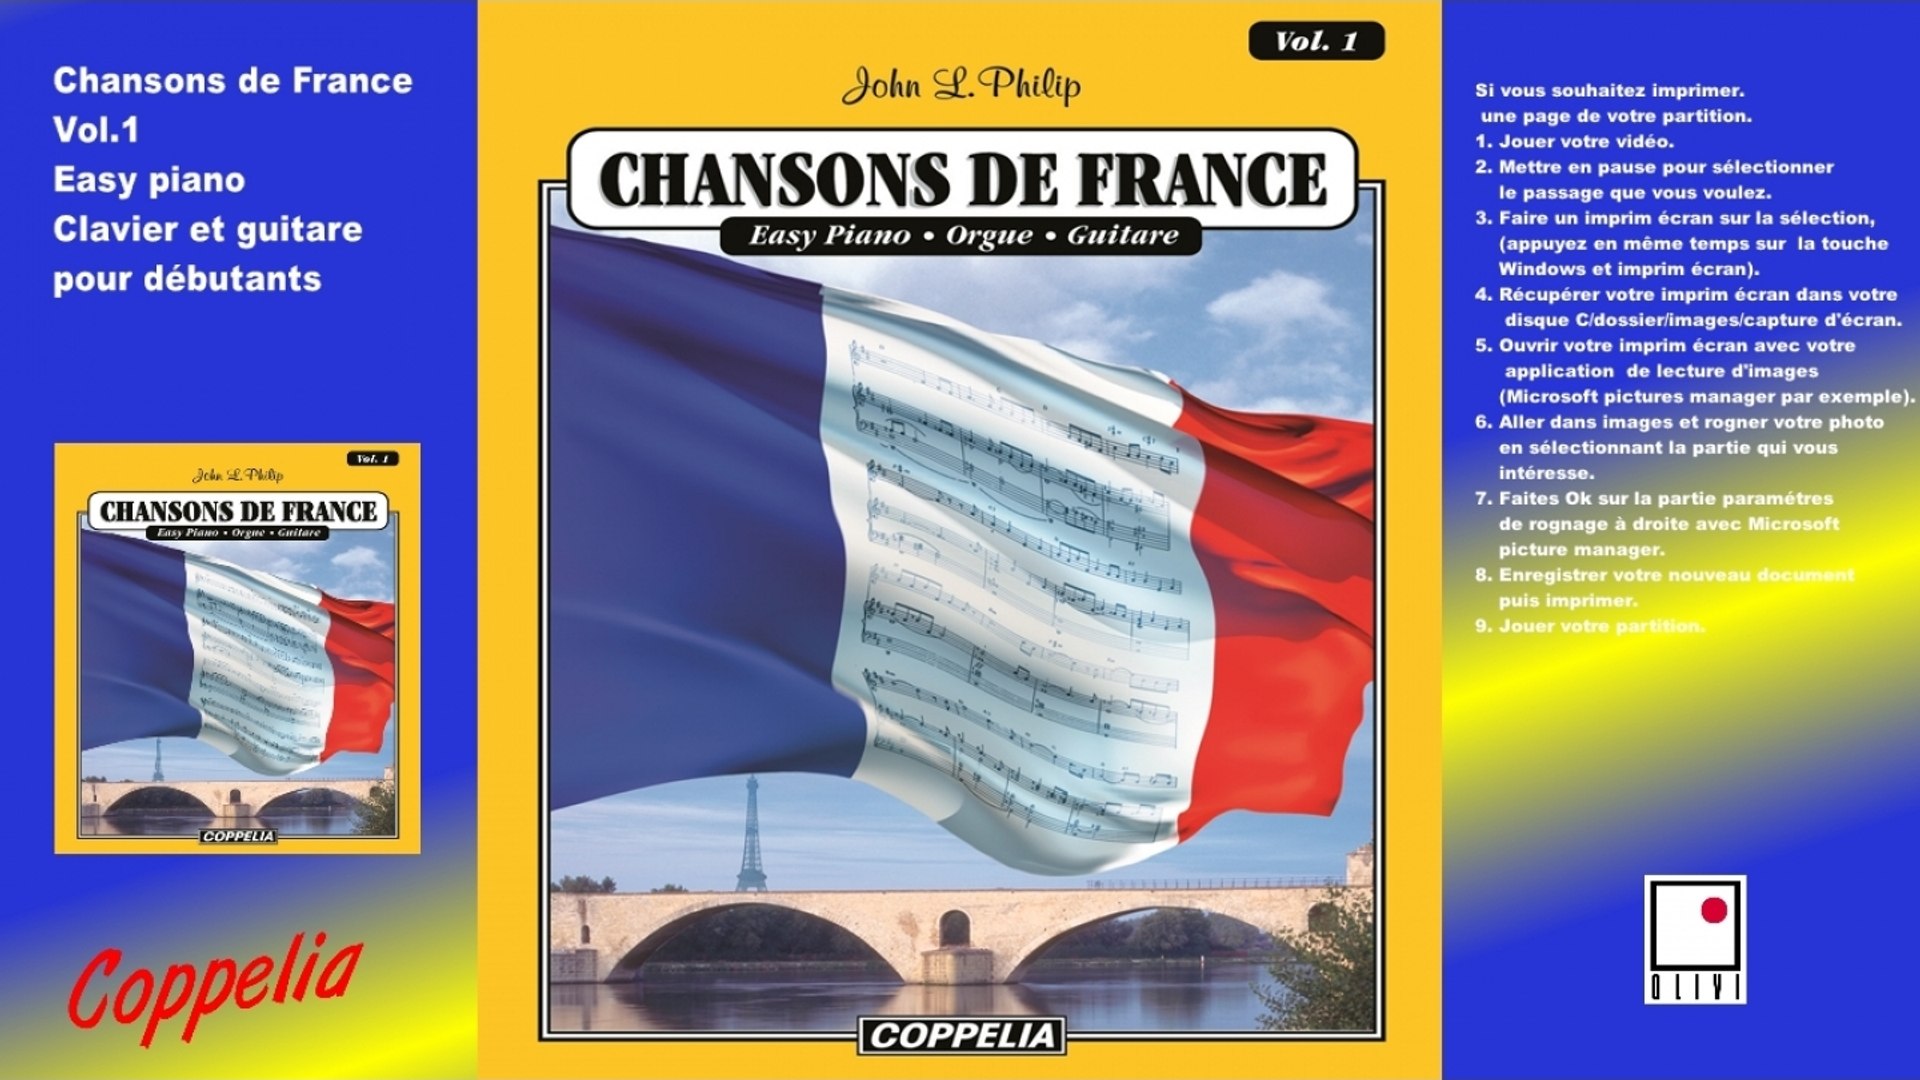 Chansons de France vol.1 - partitions pour débutants Piano, Clavier, Orgue  et Guitare - Vidéo Dailymotion